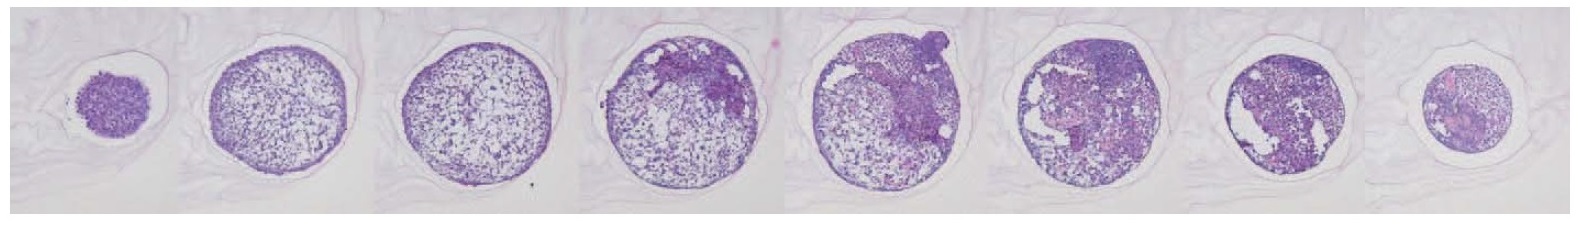 マウス細胞由来の胚様体